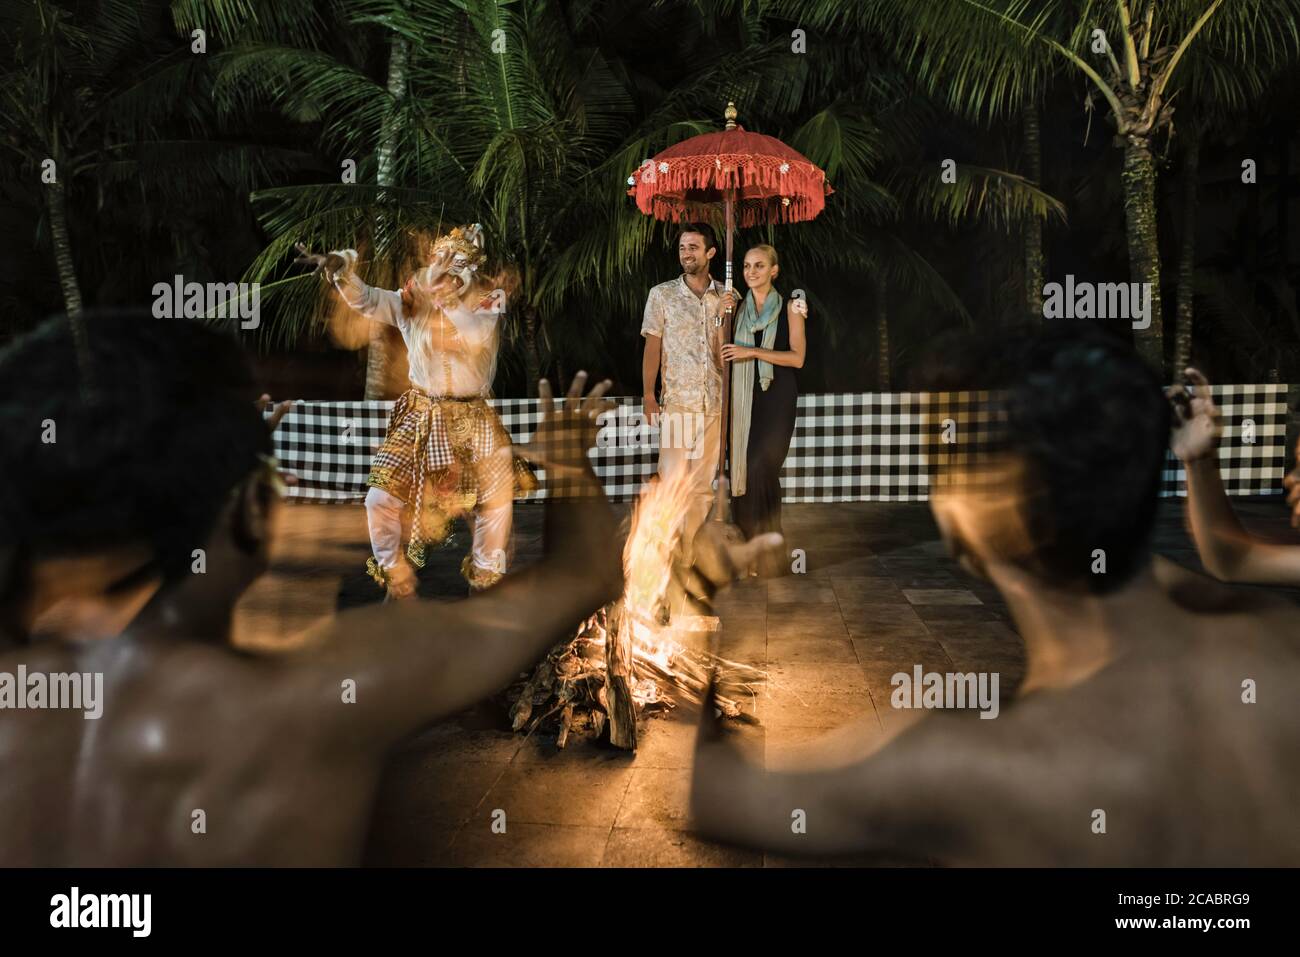 Asien, Indonesien, Bali, junges kaukasisches Paar, in eleganter Freizeitkleidung, genießen Sie einen traditionellen balinesischen Kecak-Tanz, der um ein Feuer herum aufgeführt wird Stockfoto